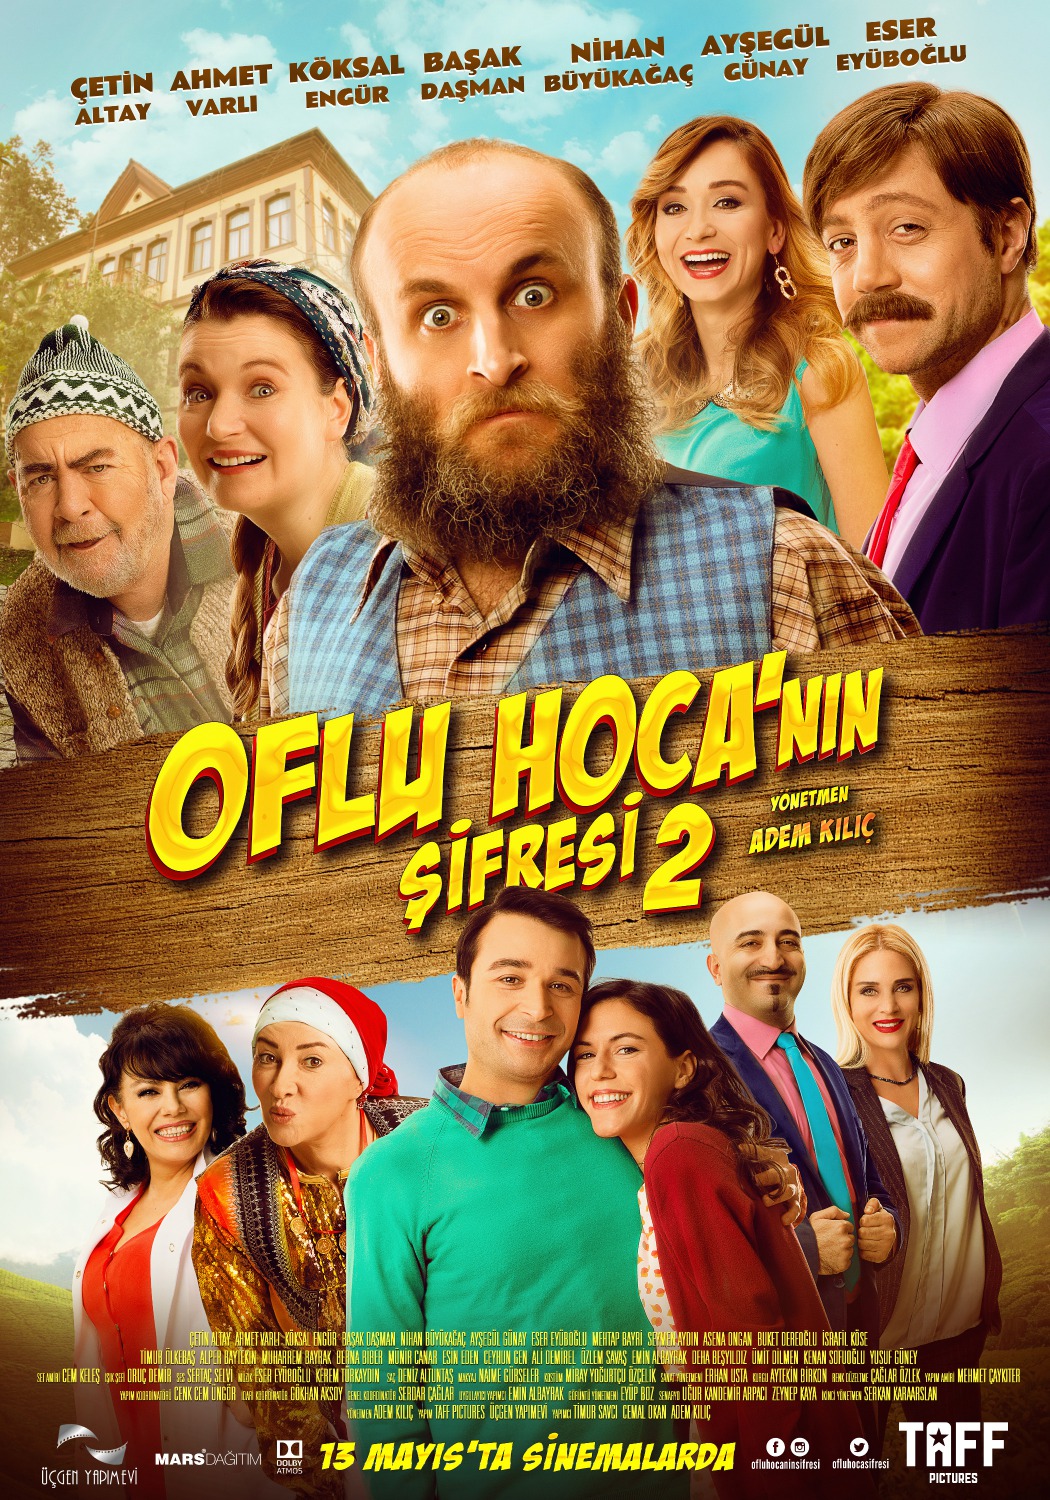 Extra Large Movie Poster Image for Oflu Hoca'nin Sifresi 2 